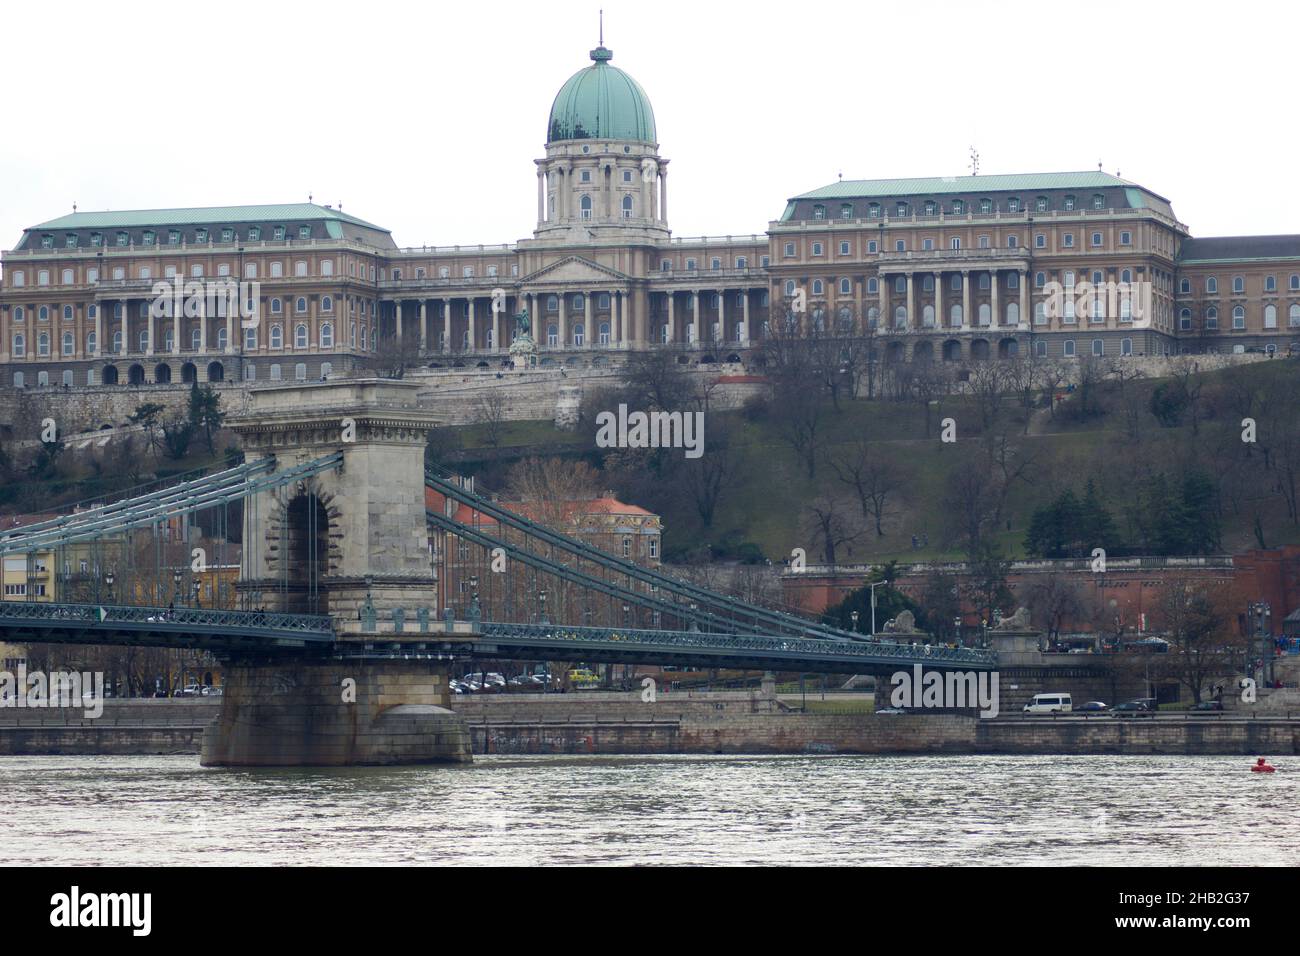 BUDAPEST, UNGARN - 03. MÄRZ 2019: Der Königspalast, Standort der Ungarischen Nationalgalerie. Kettenbrücke im Vordergrund Stockfoto